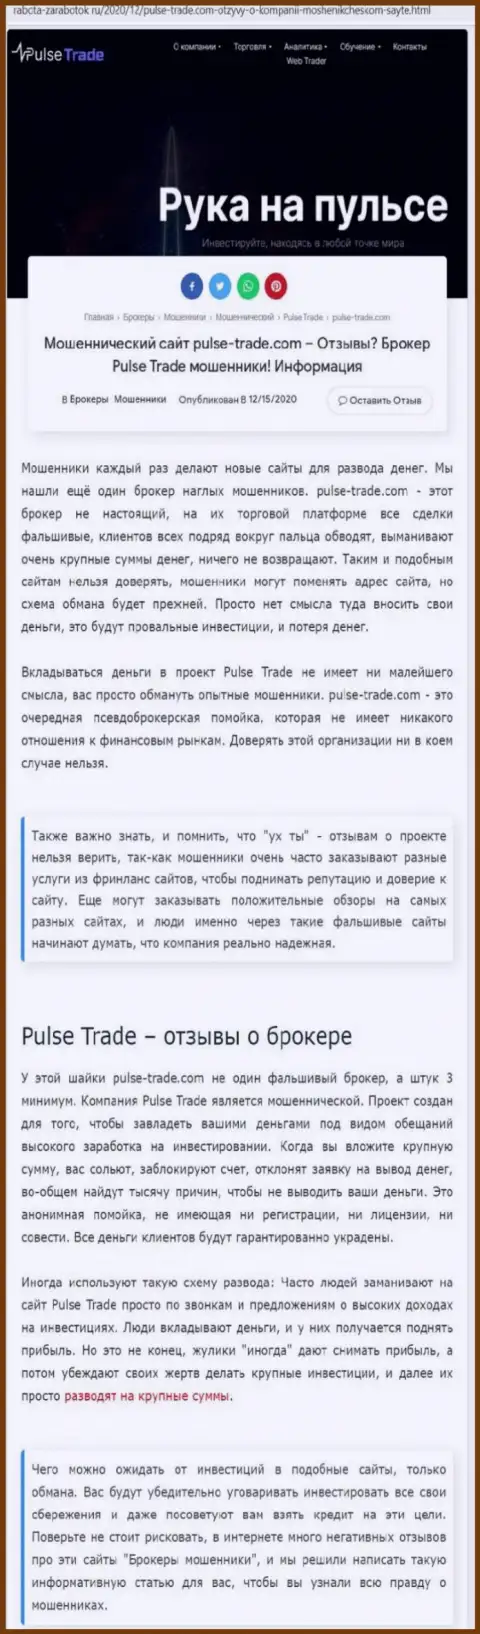 Pulse-Trade - однозначные кидалы, не ведитесь на заманчивые условия (обзорная публикация)